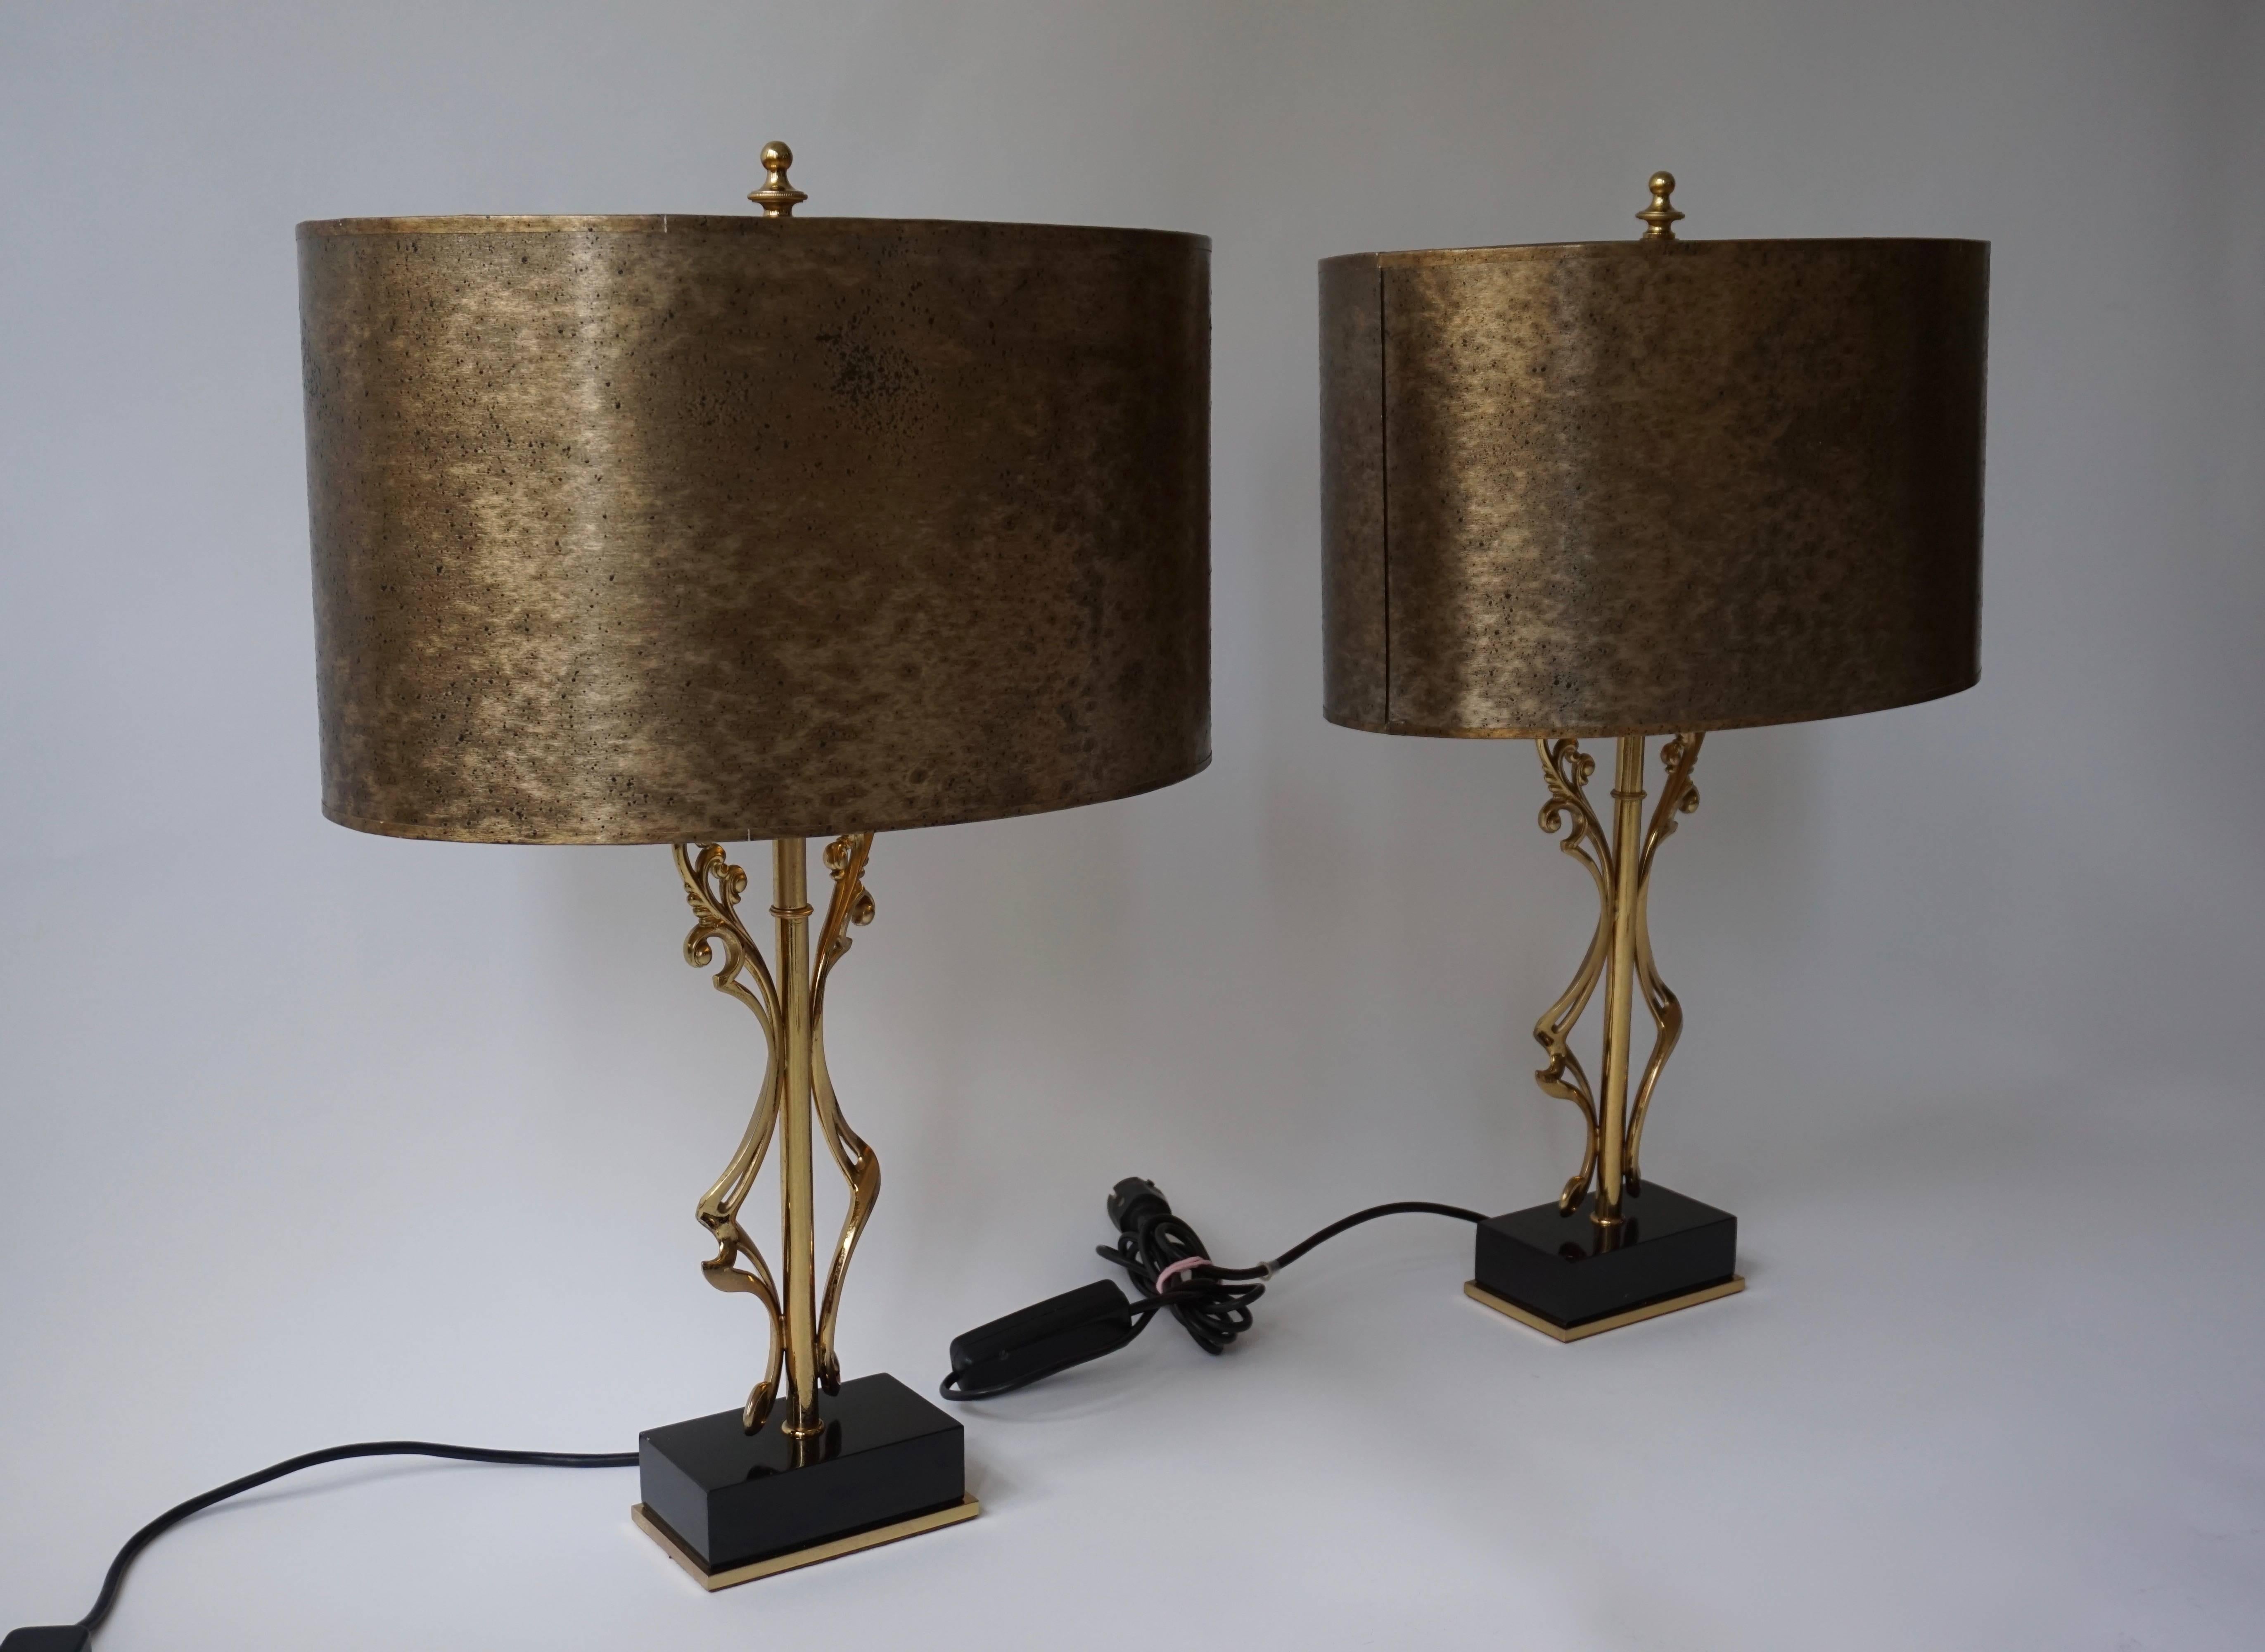 Zwei elegante Tischlampen aus Messing.
Jede Tischlampe hat zwei E27-Glühbirnen und eine E14-Glühbirne.
Die Lampen können individuell gesteuert werden.
Maße: Höhe 68 cm.
Breite 45 cm.
Tiefe 31 cm.
 